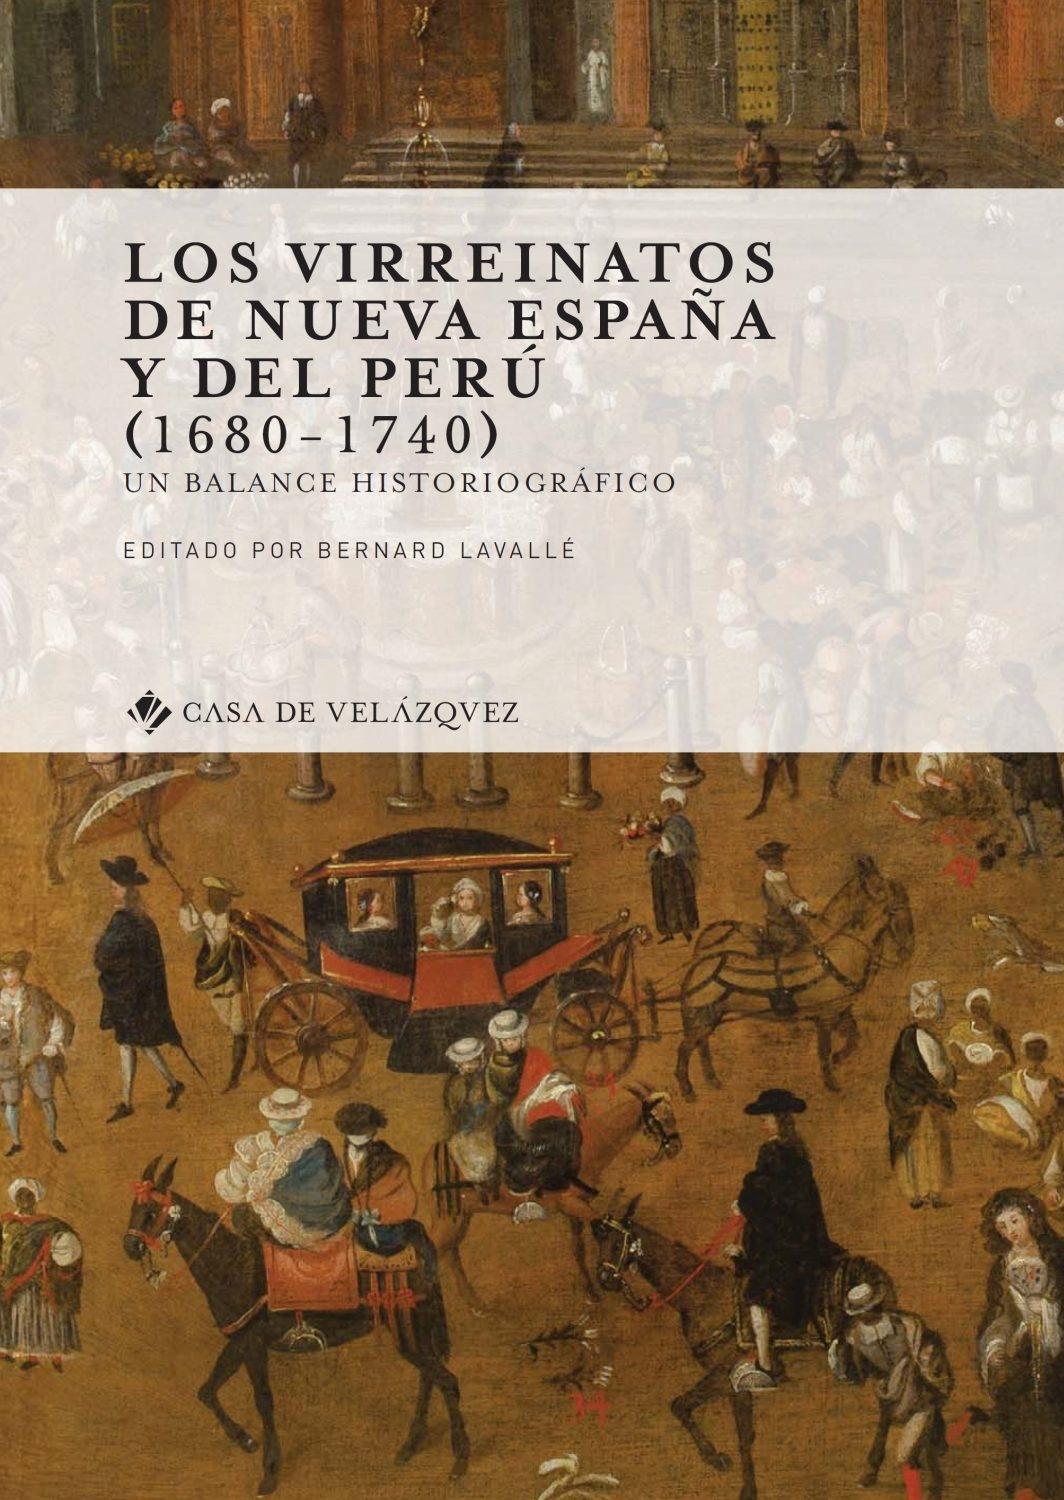 Los virreinatos de Nueva España y del Perú (1680-1740)  "Un balance historiográfico "